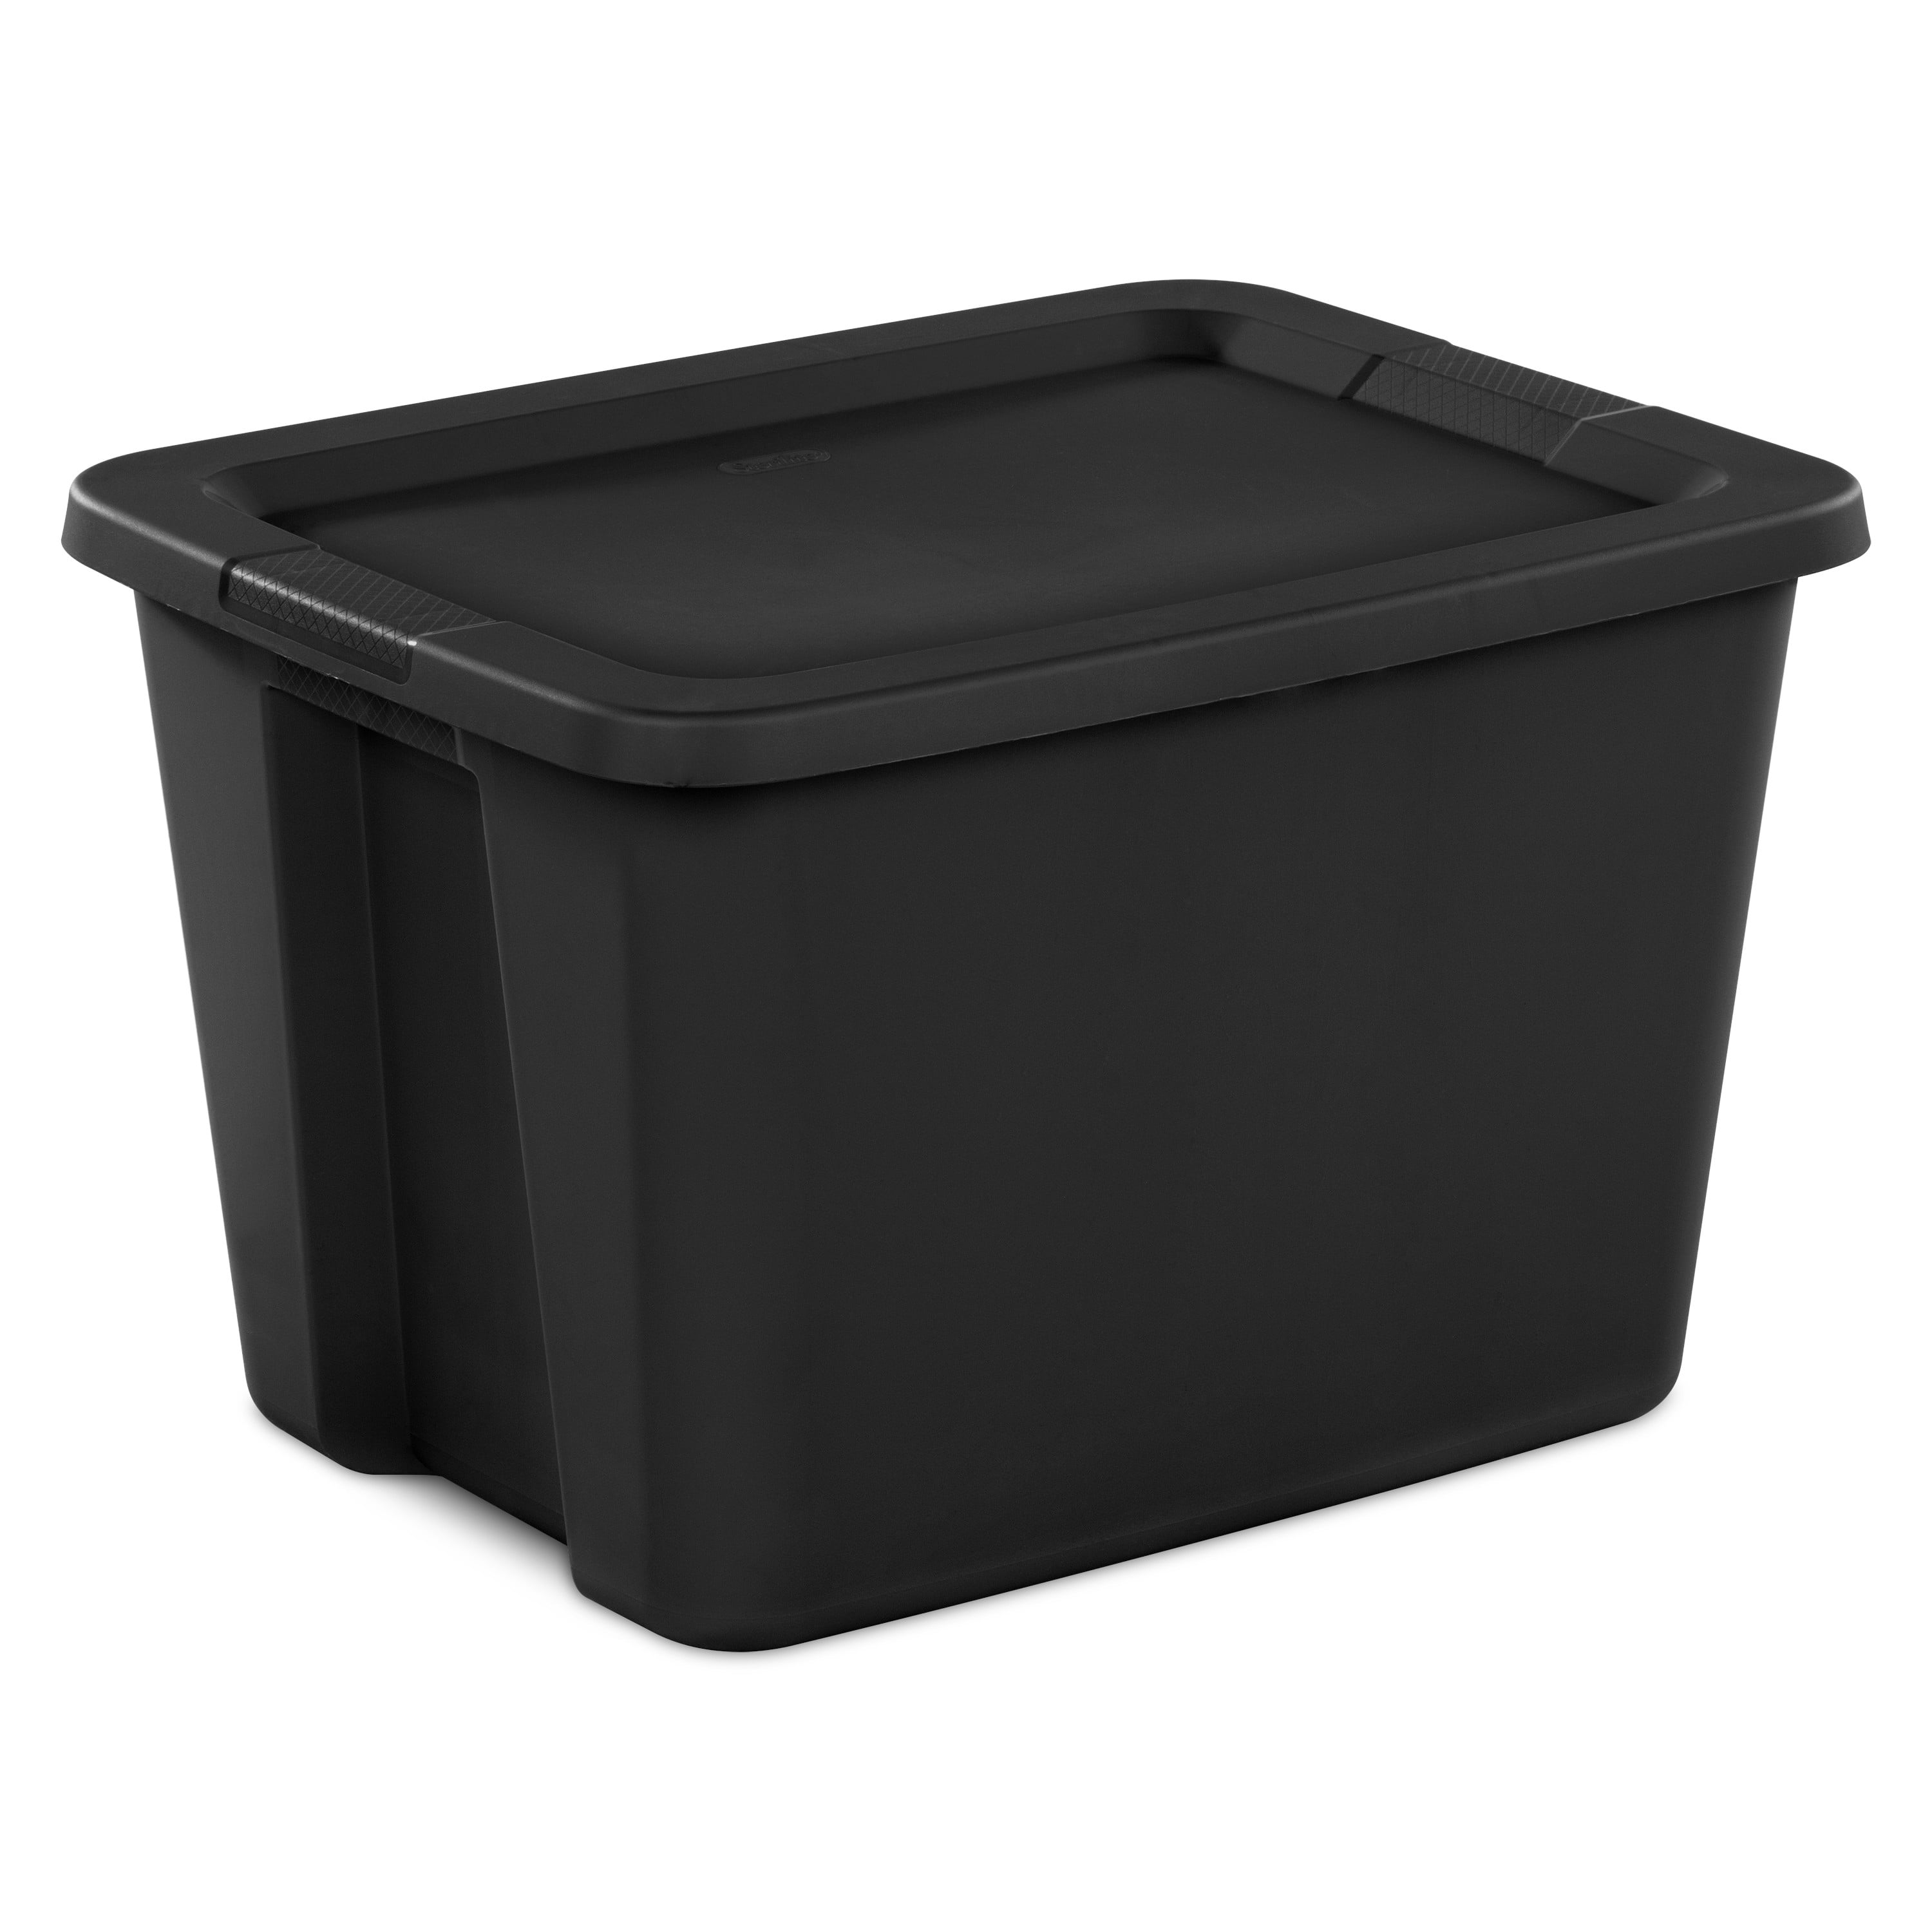 Sterilite 18 Gallon Tote Box Plastic, Black